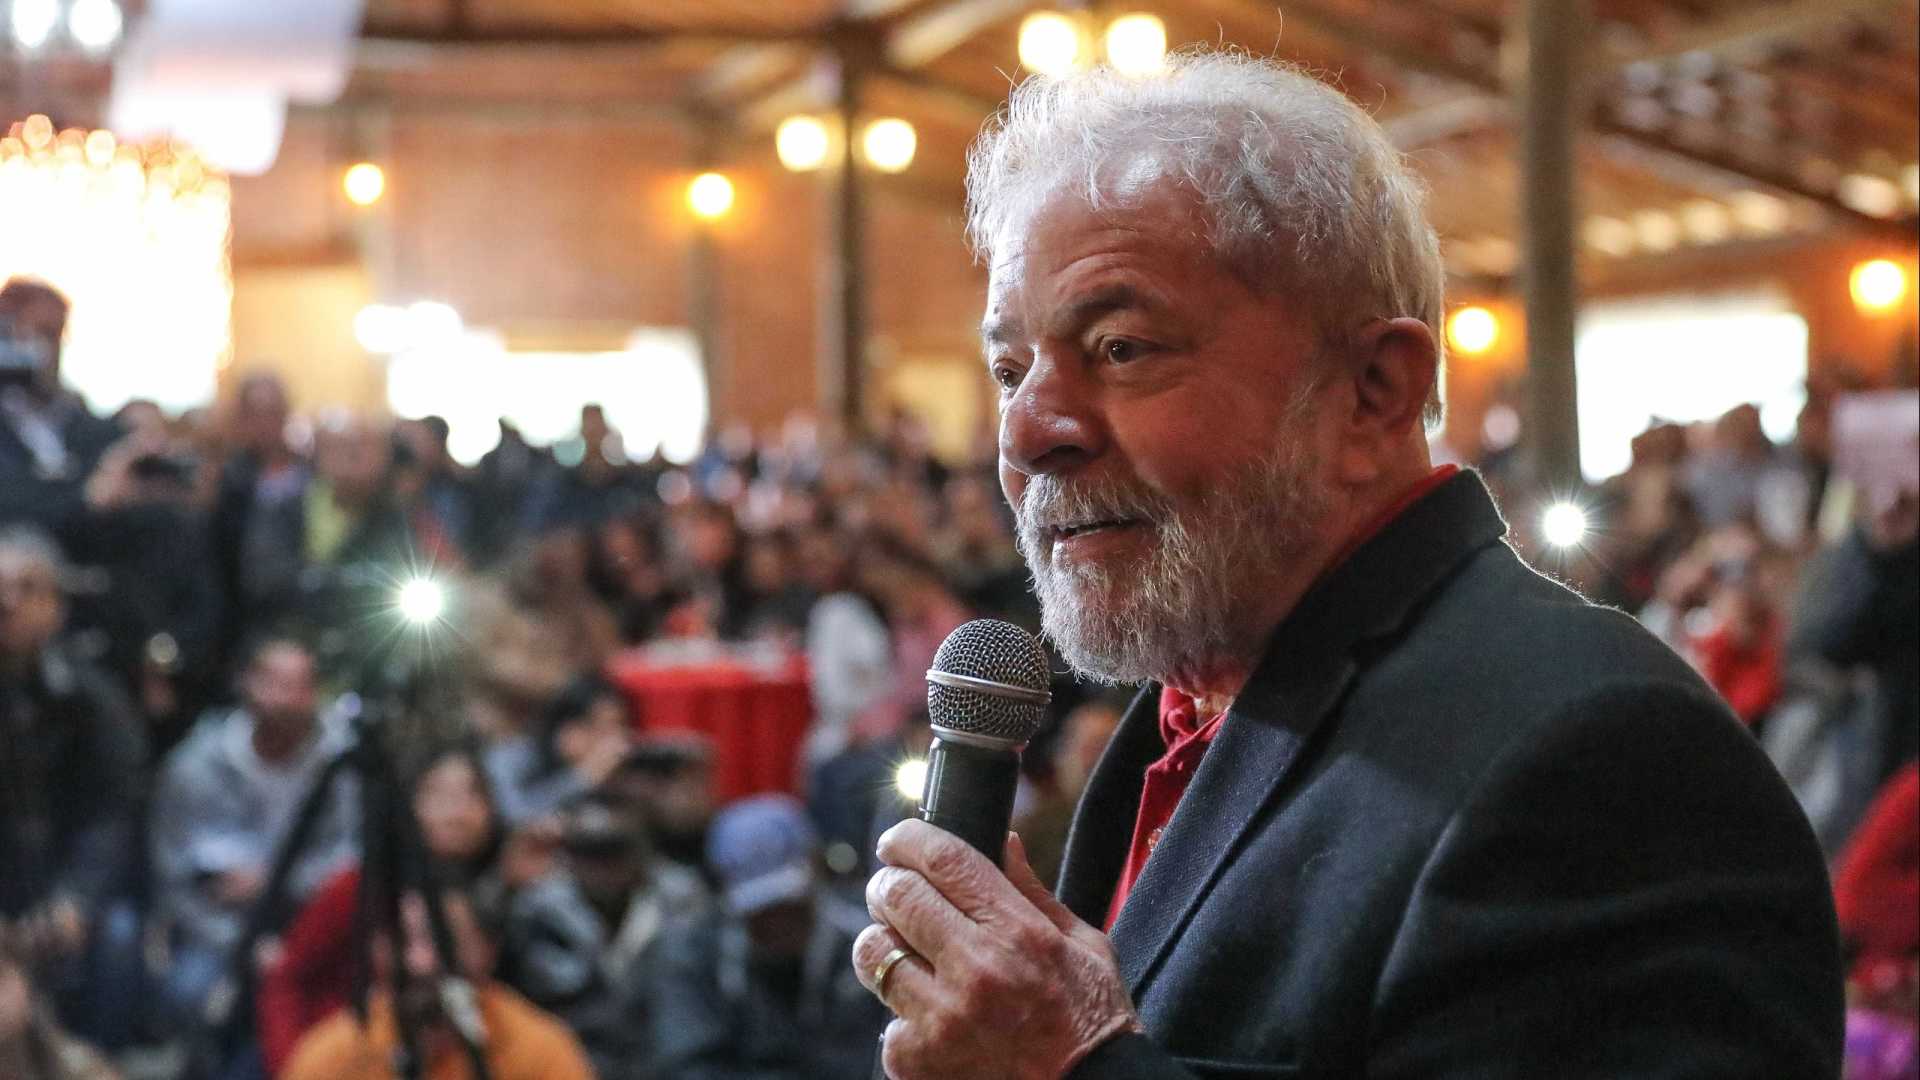 Lula pensa em isenção de IR a pessoas com salário de até R$ 5 mil